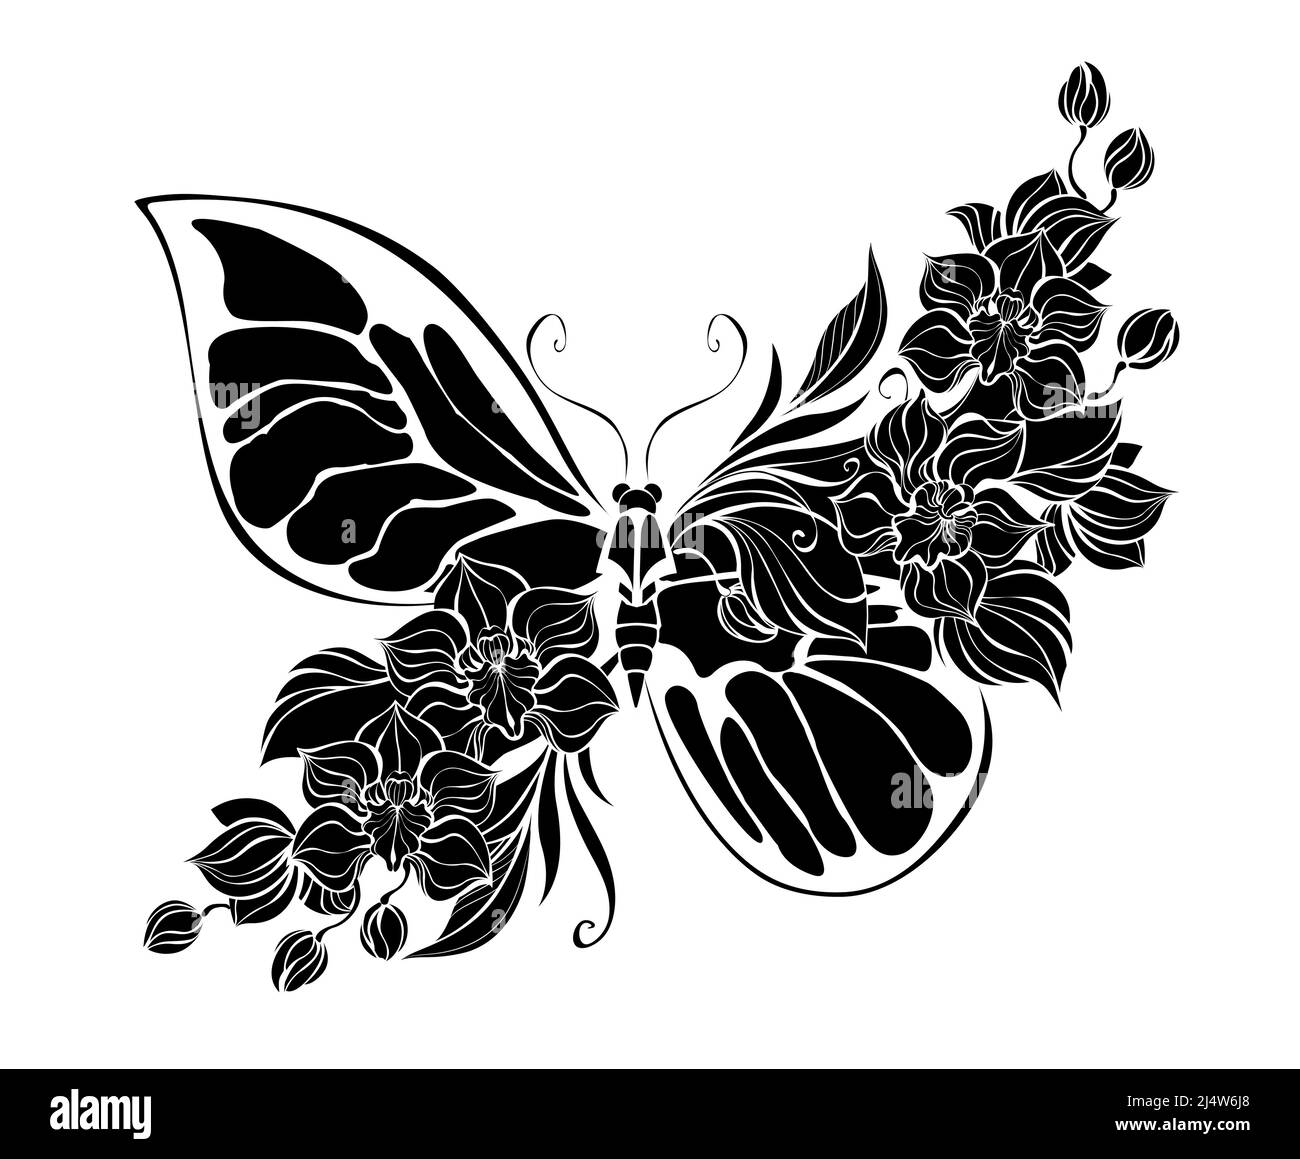 Silhouette, stilizzata, farfalla artistica, decorata con orchidee esotiche in fiore su sfondo bianco. Illustrazione Vettoriale